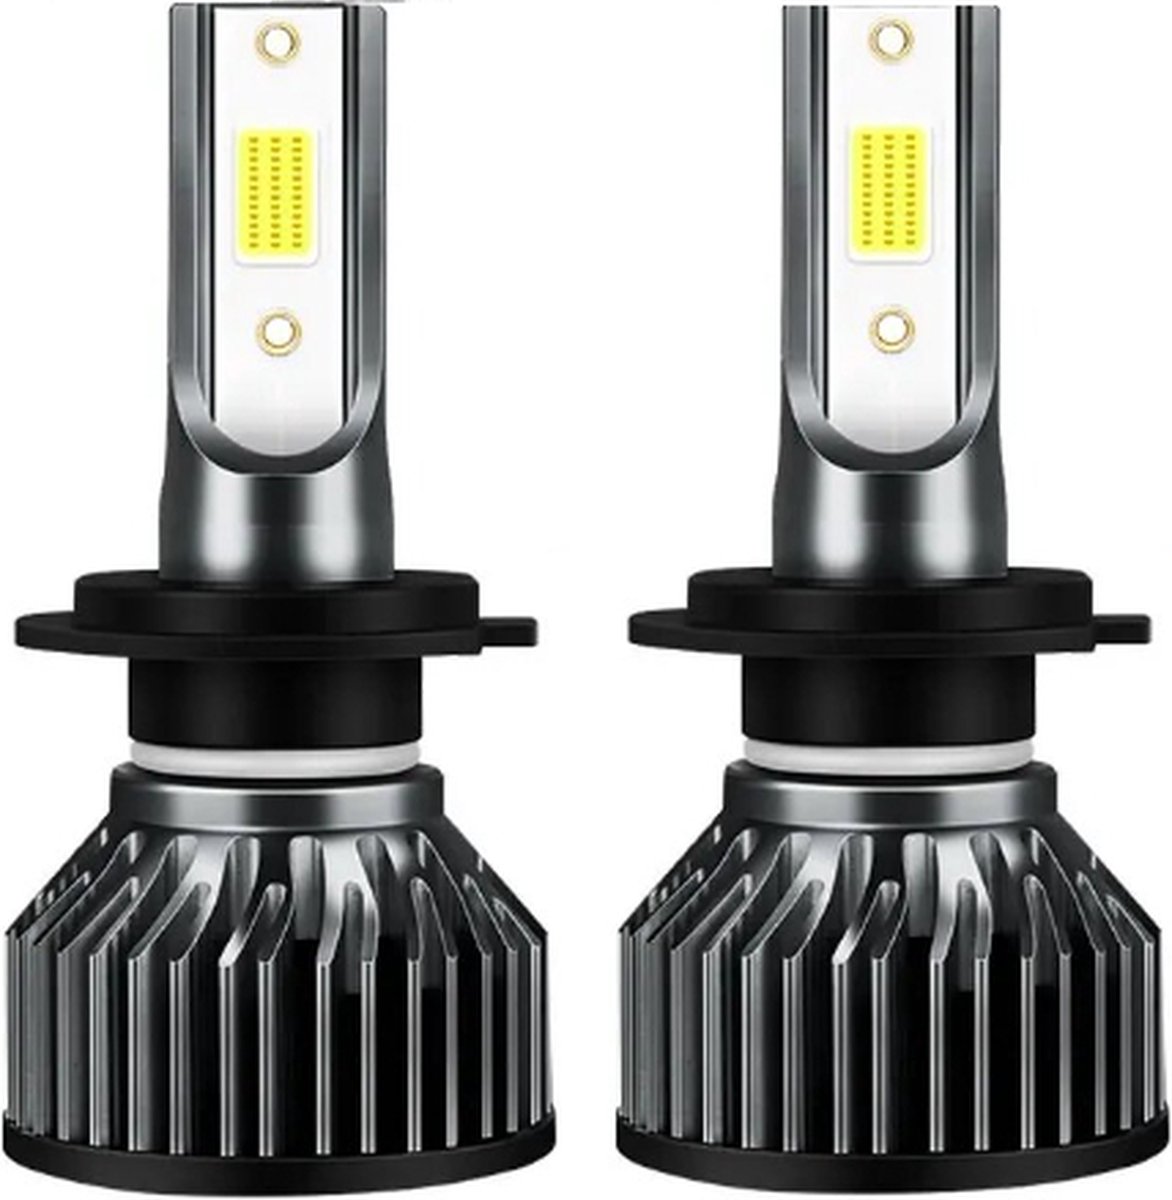 TLVX H7 55Watt Mini LED lampen – Canbus – Koplampen – Motor - Headlights - 8000K - Wit licht – Autoverlichting – 12V – 55w halogeen vervanger - Dimlicht – Grootlicht – 28.000 Lumen (2 stuks)